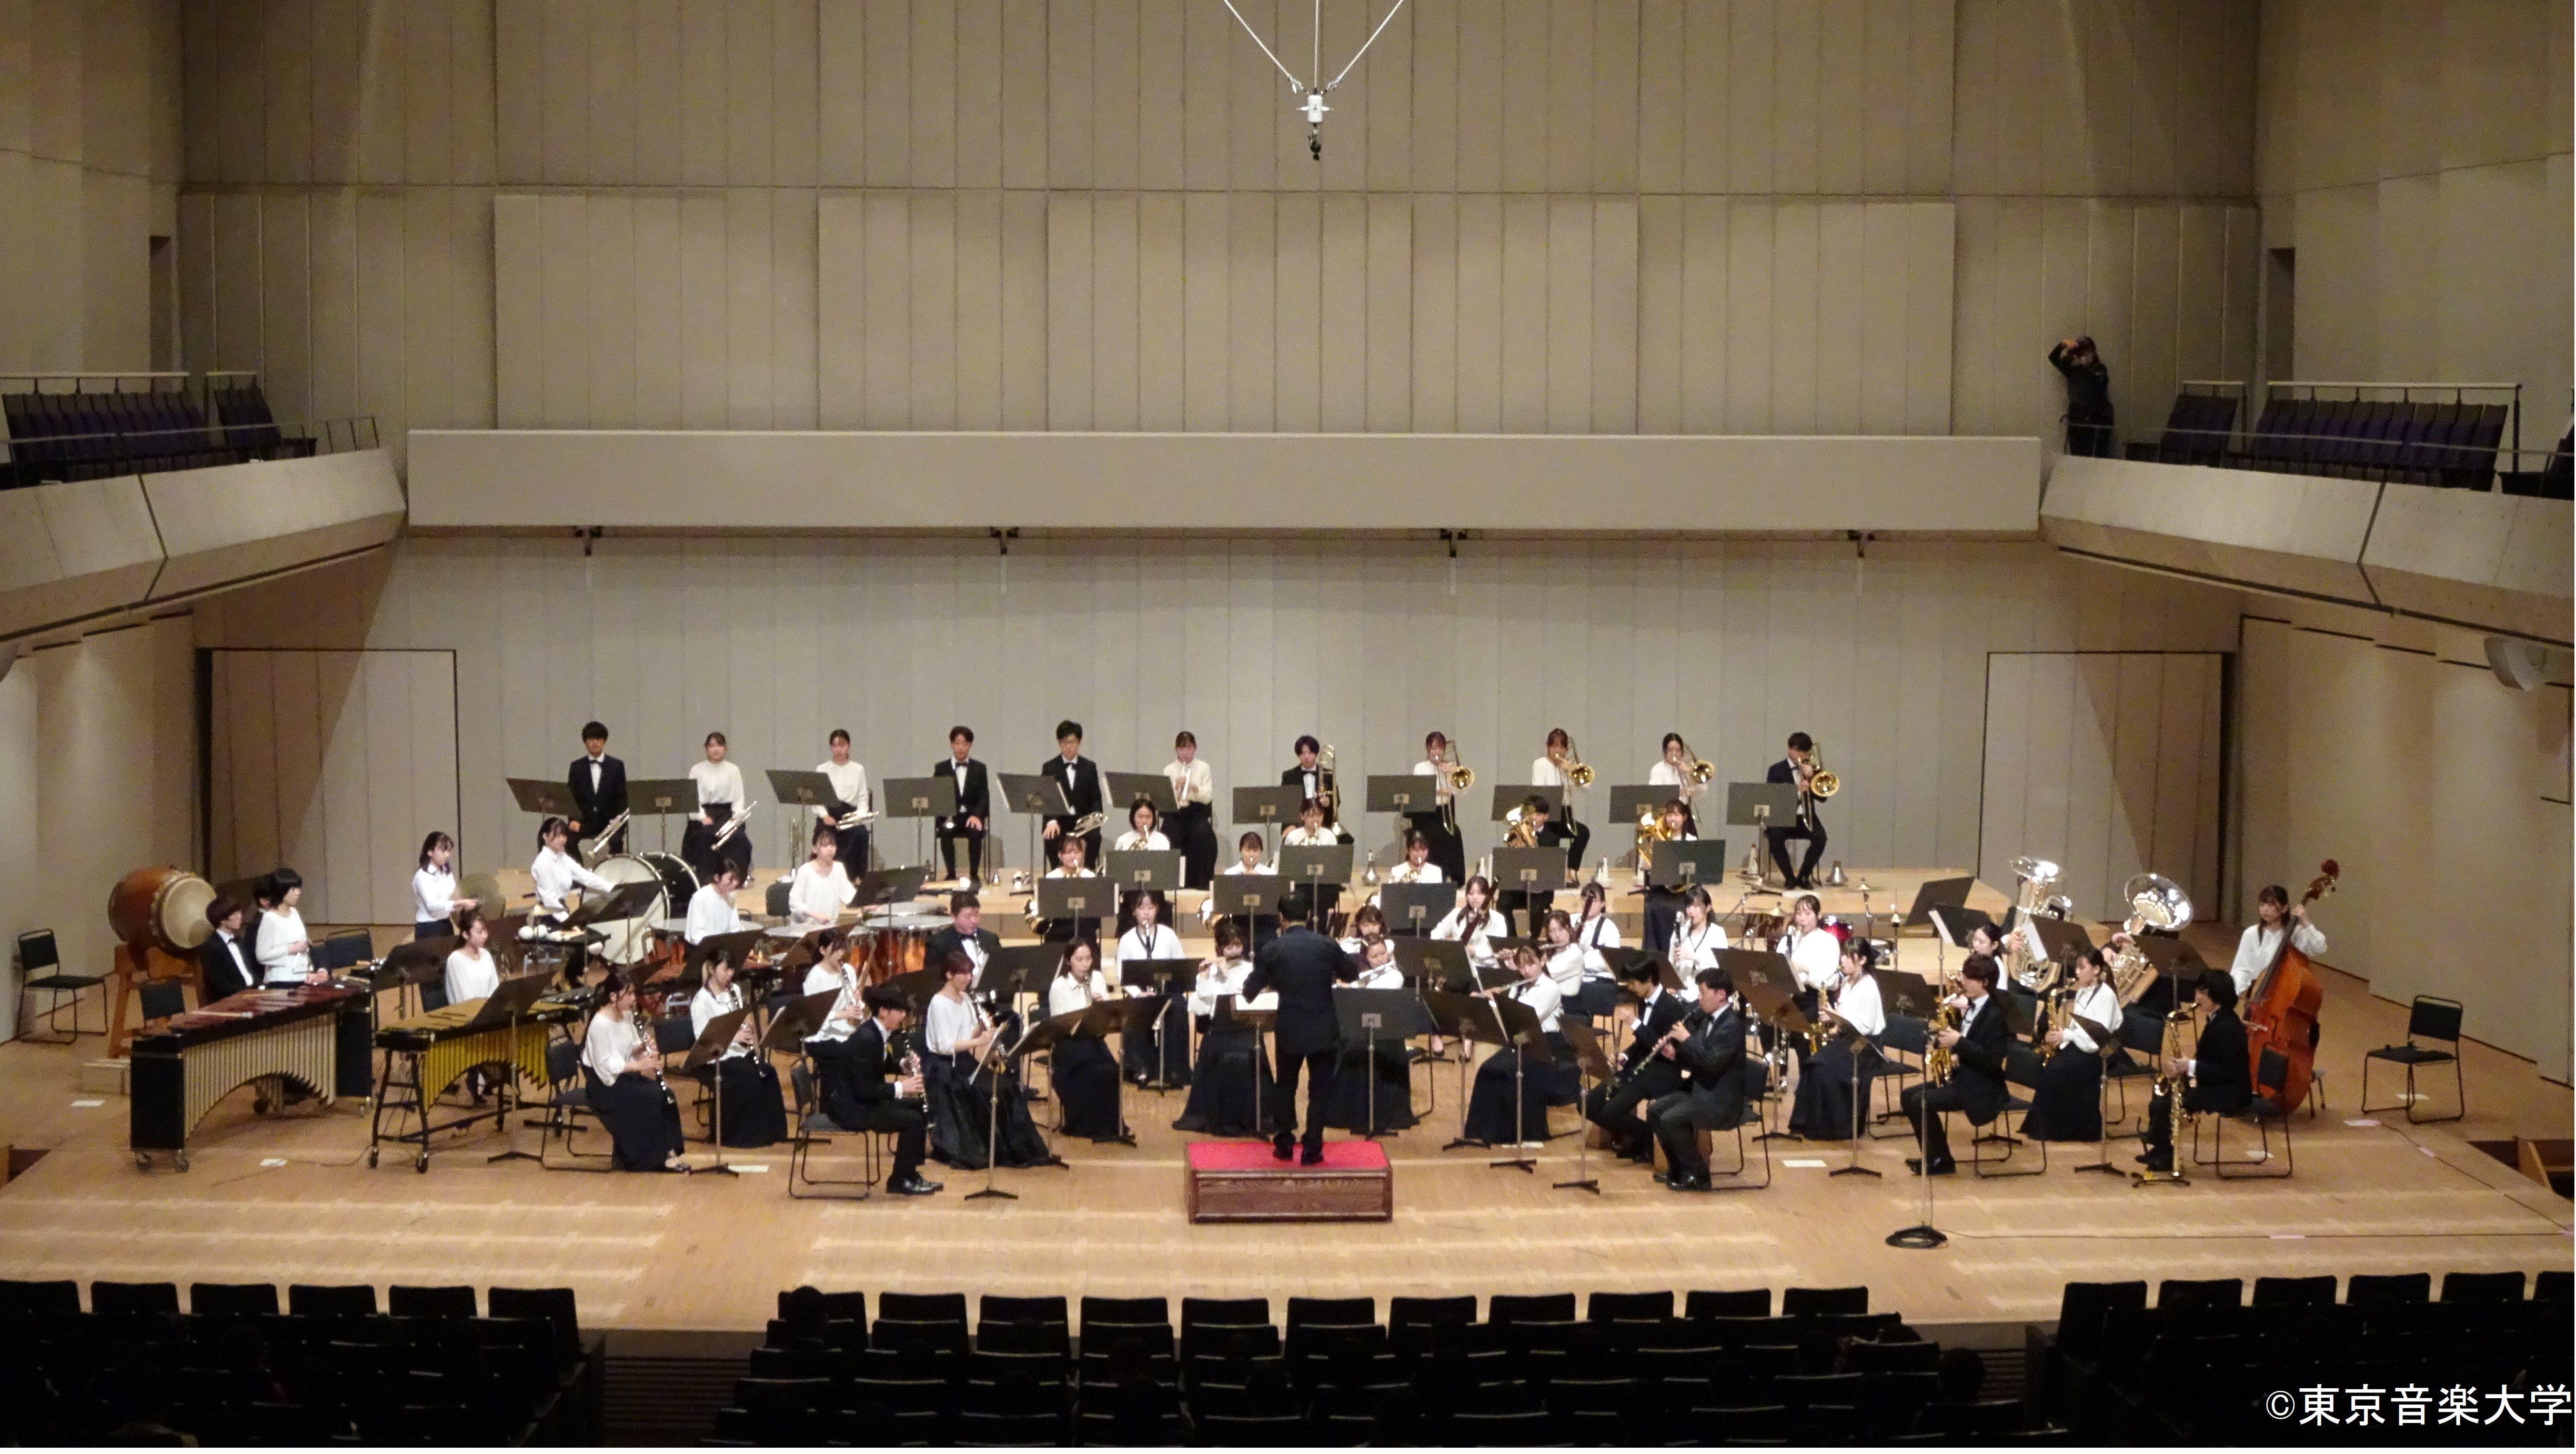 豊島区立南池袋小学校主催 「第20回 みないけコンサート」に東京音楽大学シンフォニック ウインド アンサンブルが出演しました